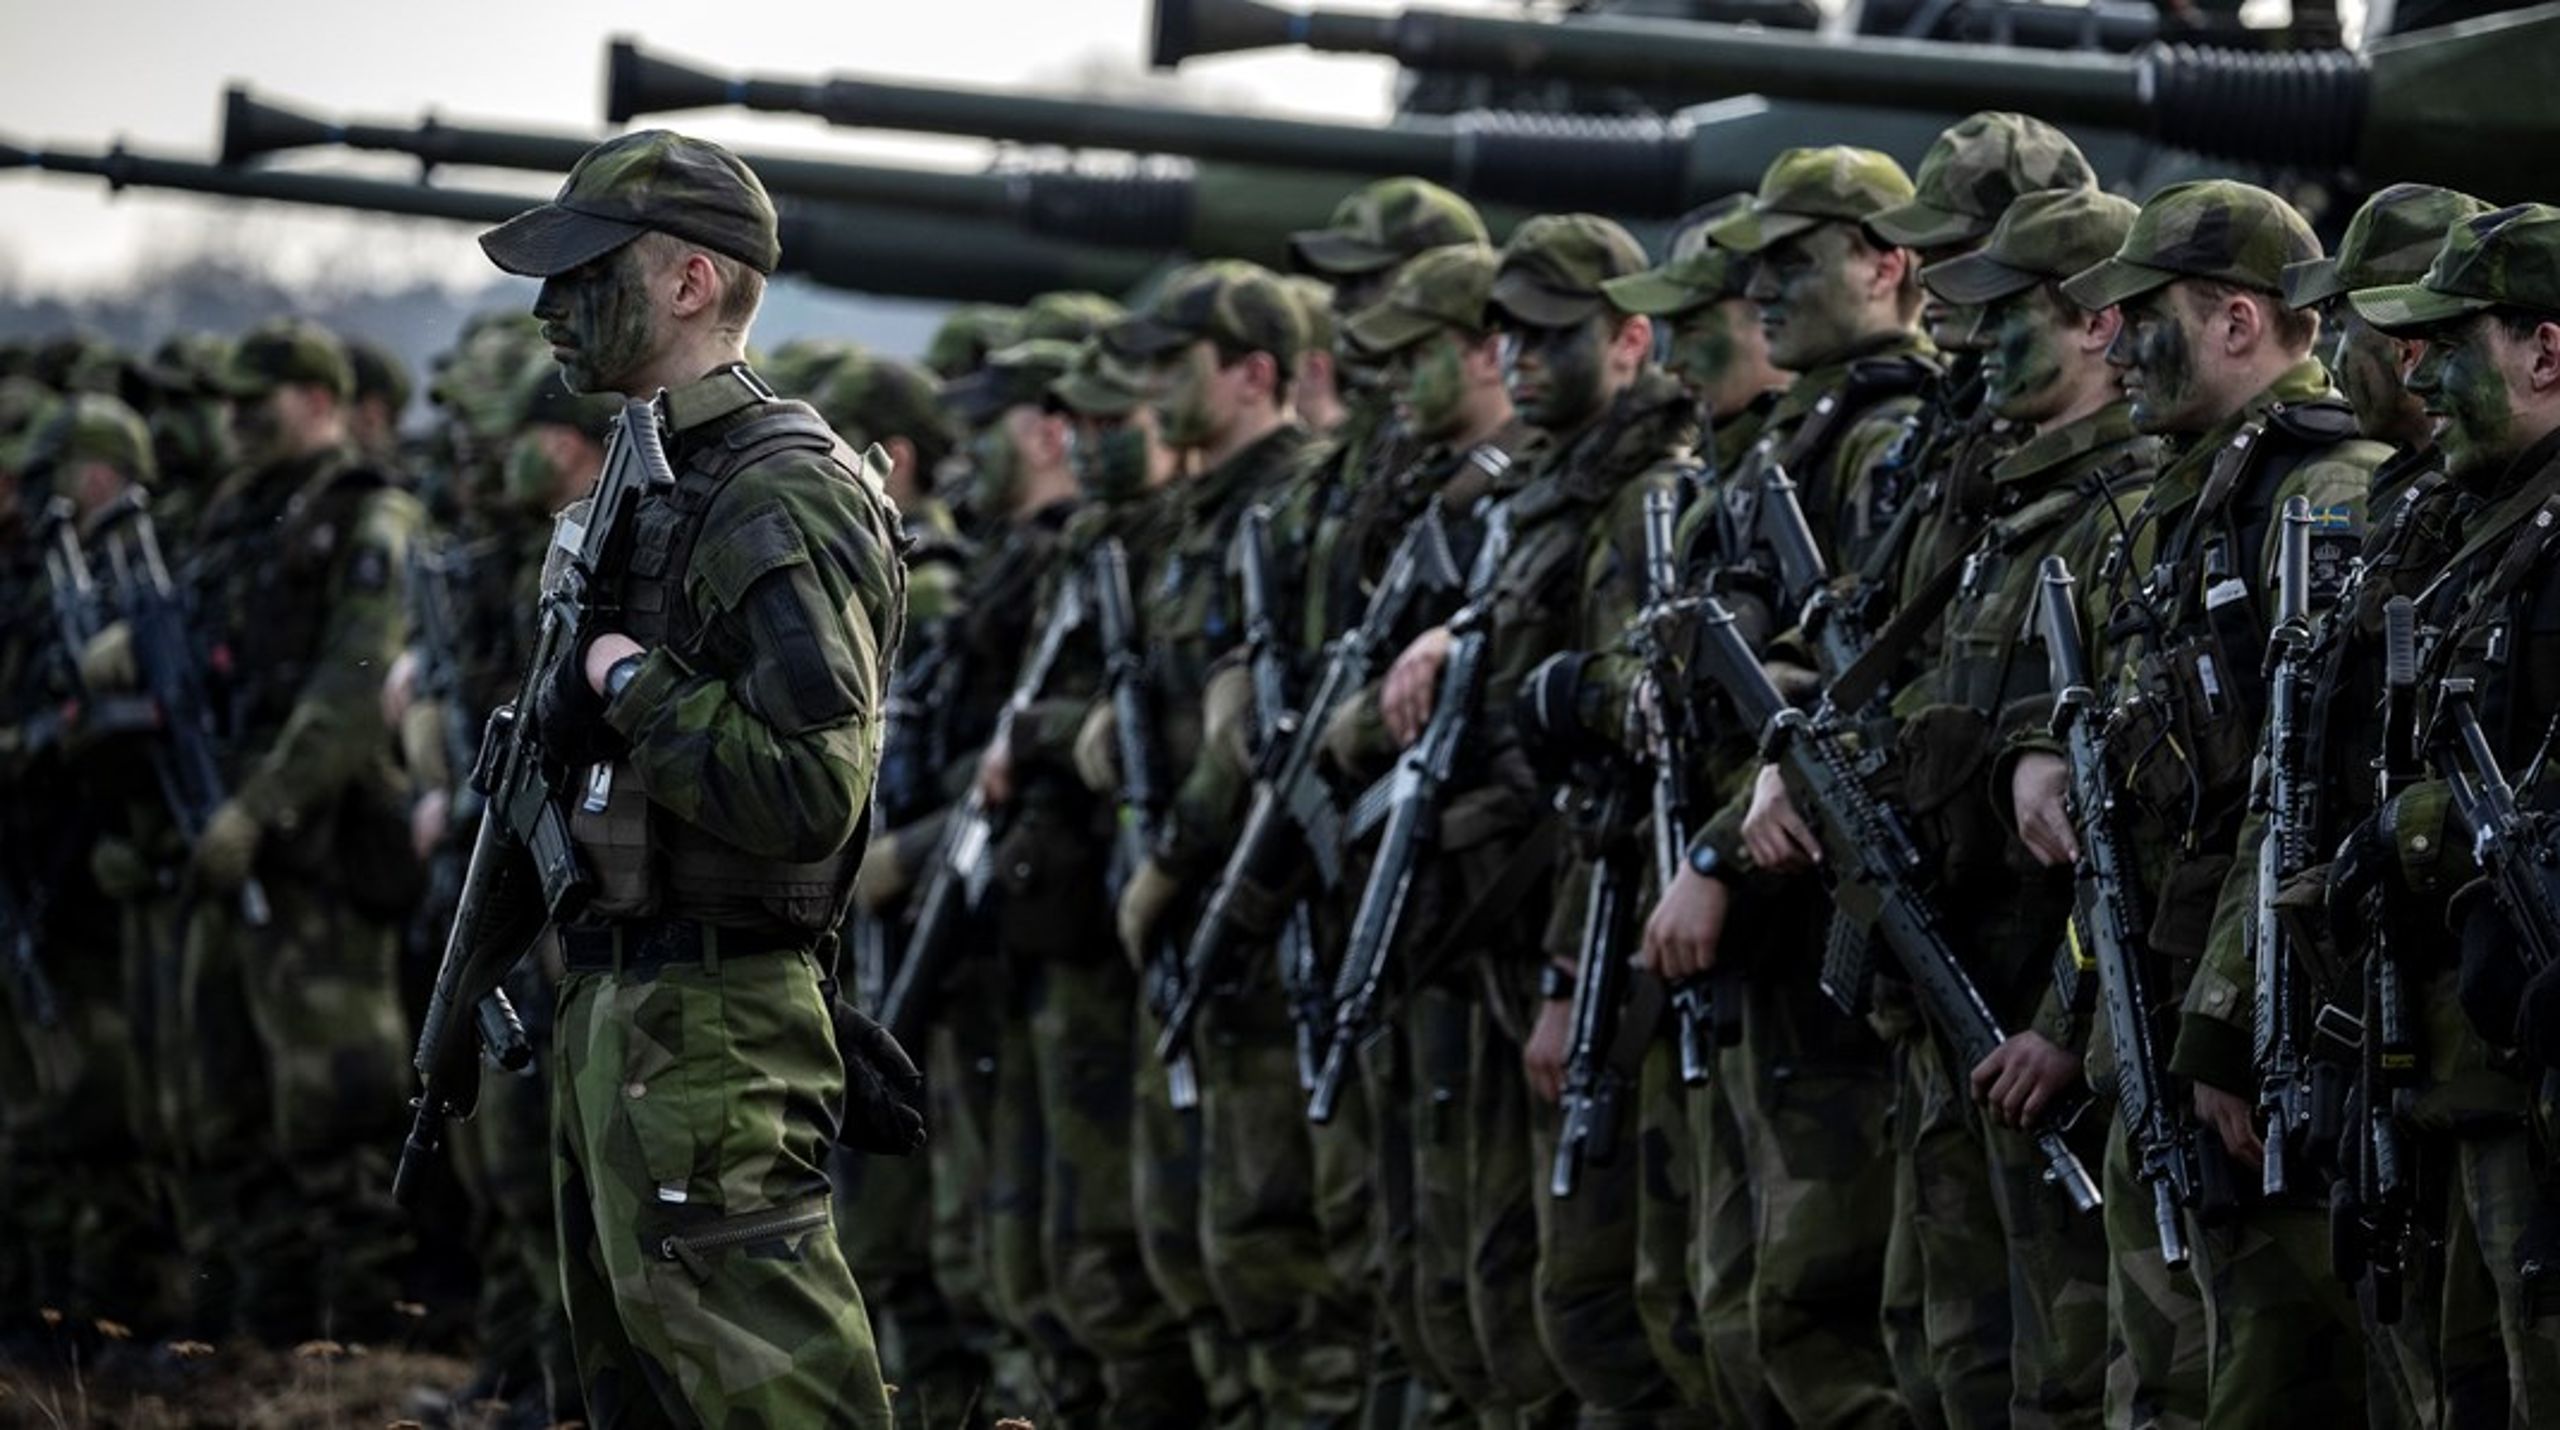 Värnpliktiga soldater under övning på Revingehed, Skåne.